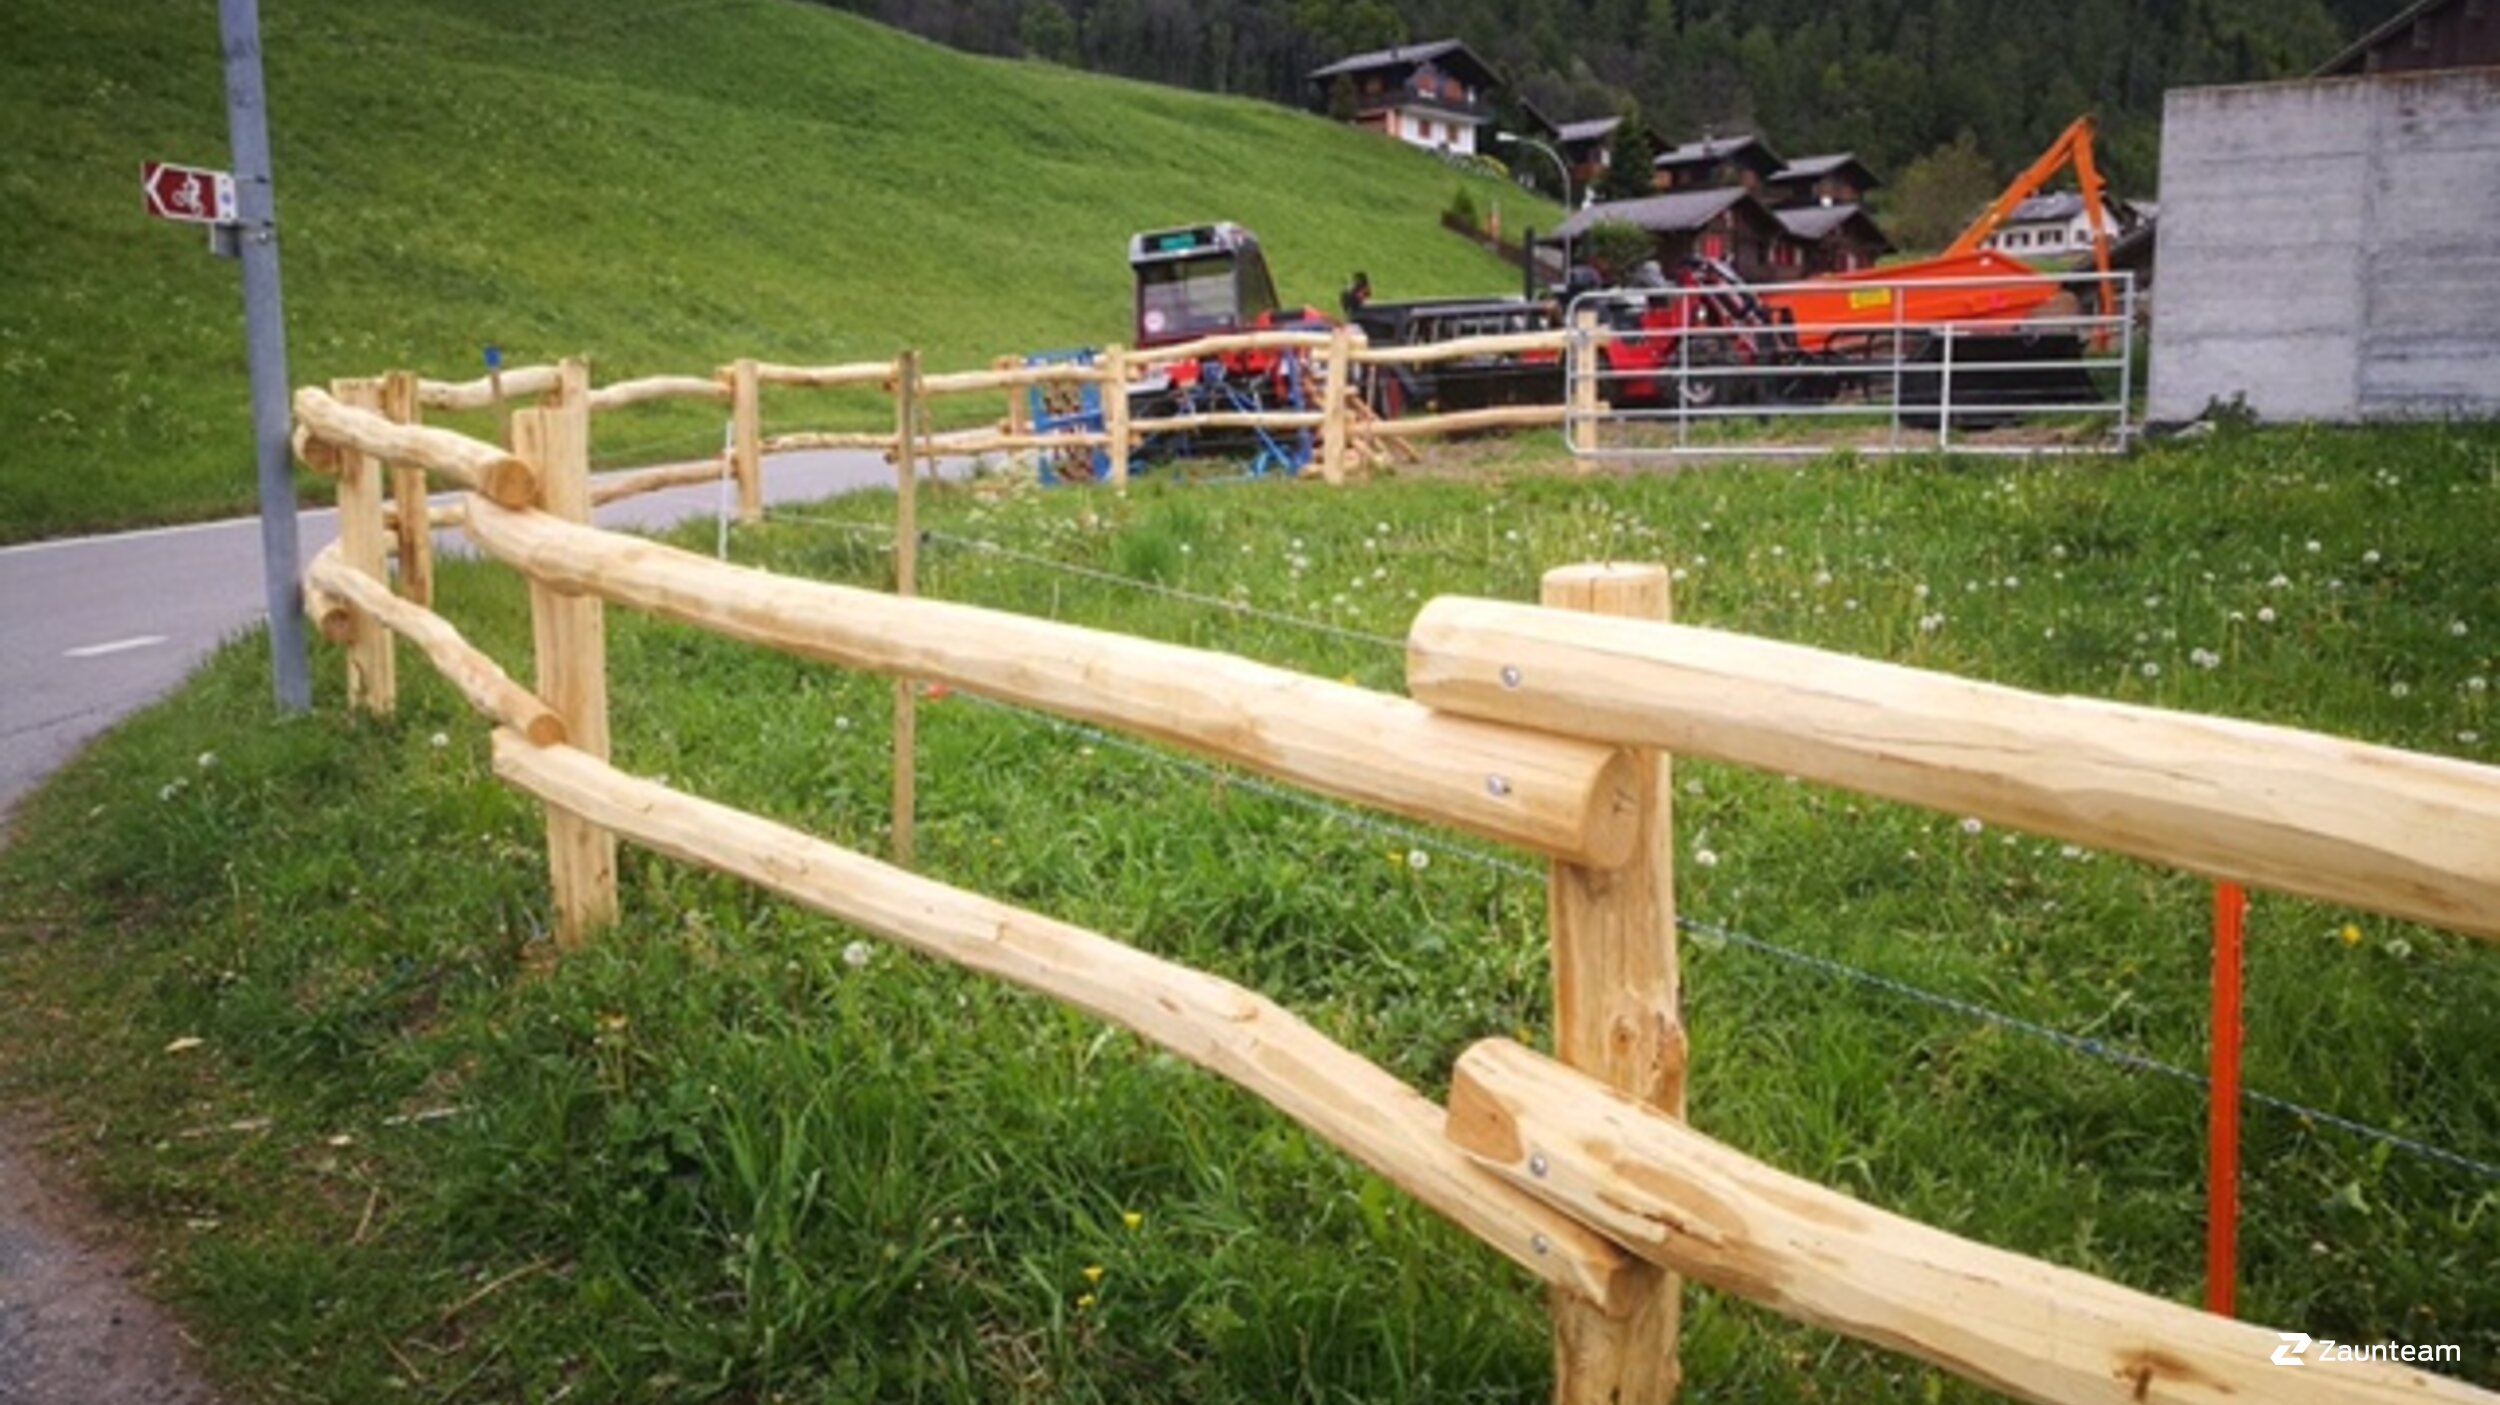 Clôture d'enclos de 2017 à 3947 Ergisch Suisse de Zaunteam Wallis / Swissclôture Valais.